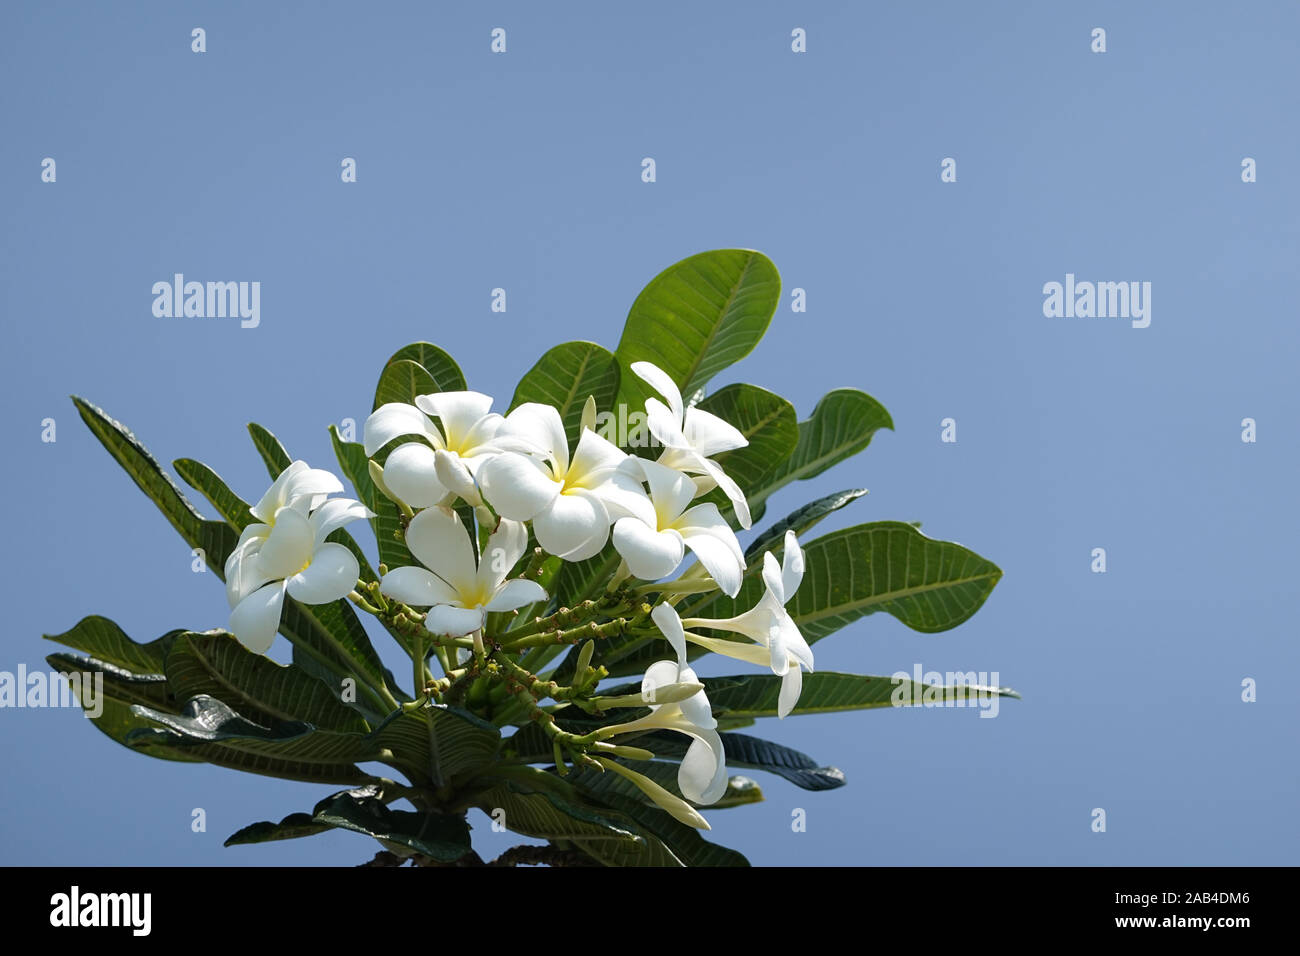 Frangipani Zweig mit weißen Blüten und blauer Himmel - Plumeria obtusa Singapur Friedhof Blume, Kopieren, duftenden Temple Tree, Nahaufnahme, Pattaya Stockfoto